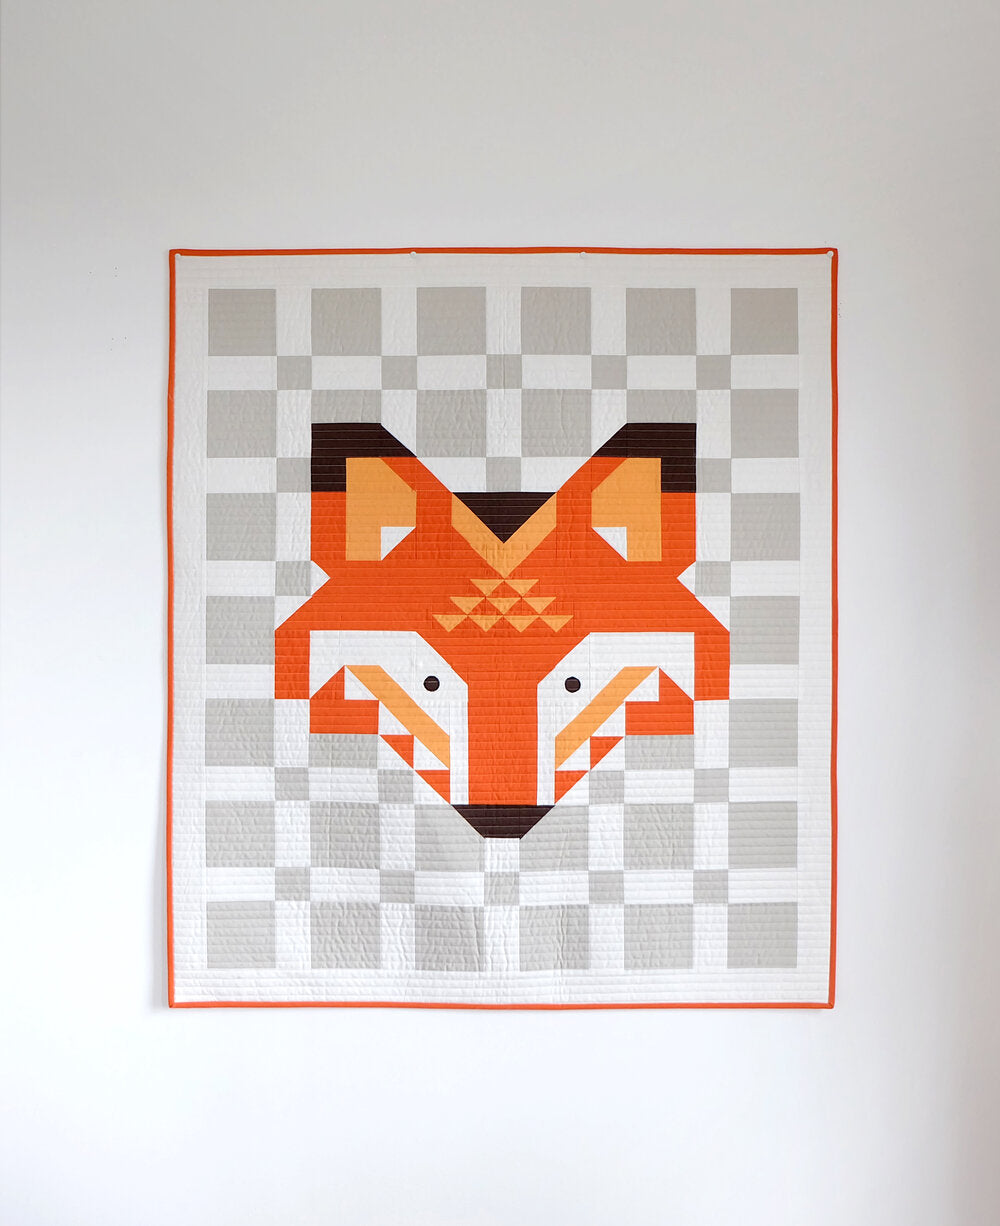 Bound Co. - Little Fox Quilt Pattern